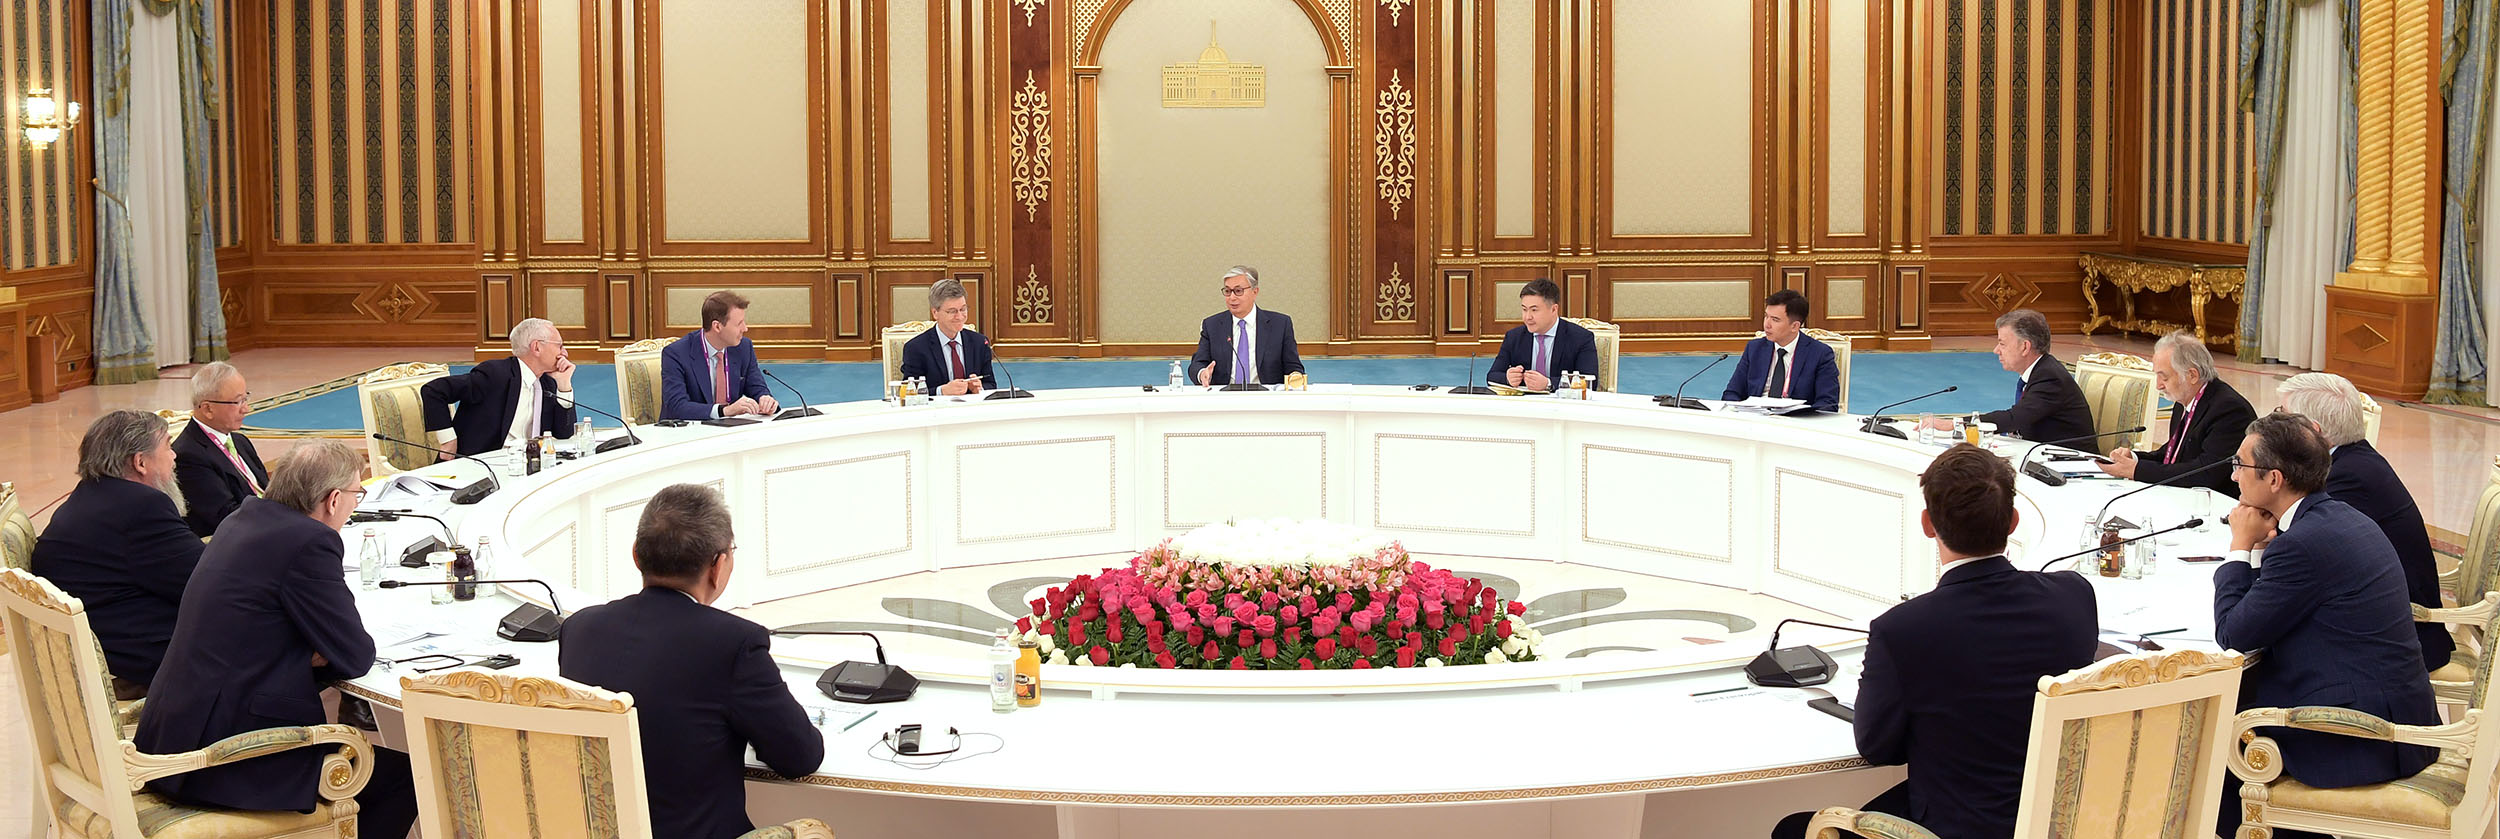 Қасым-Жомарт Тоқаев ХІІ Астана экономикалық форумға қатысушы шетелдік жетекші сарапшылармен кездесті